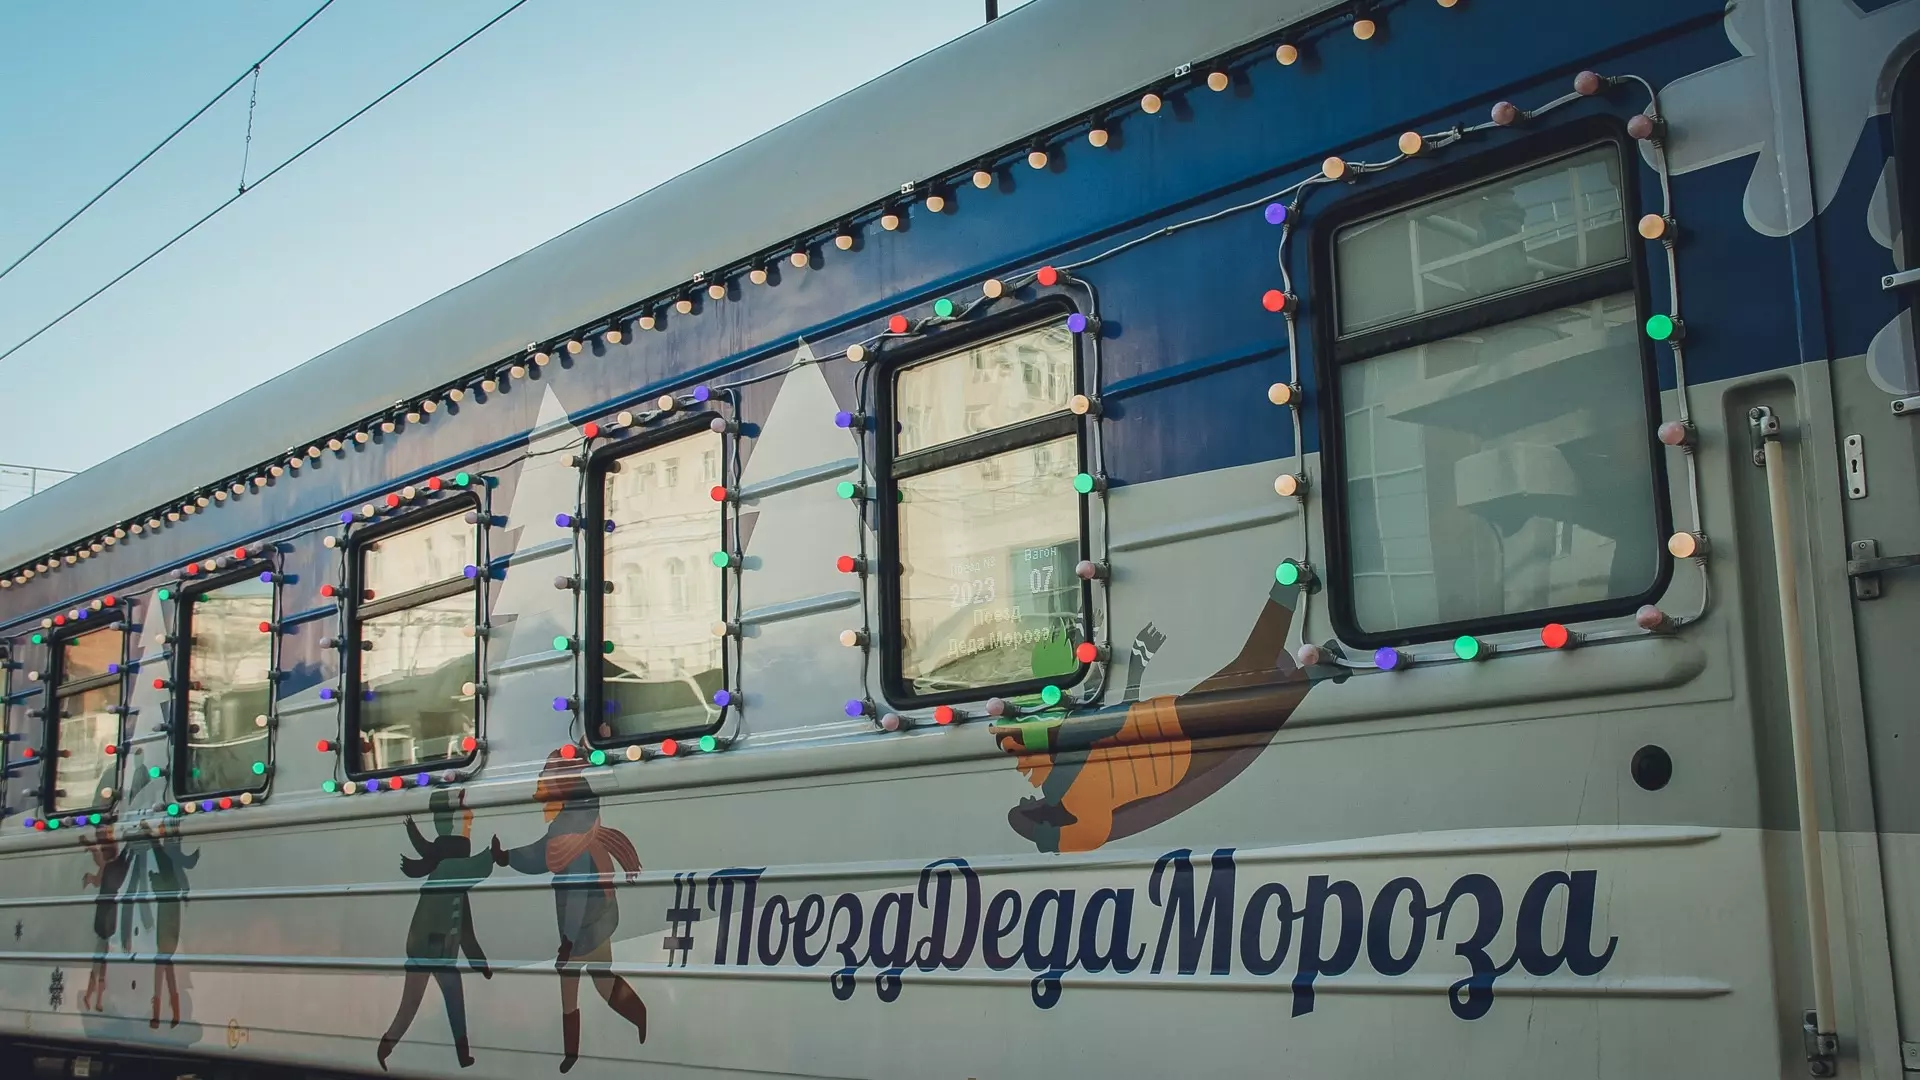 Поезд Деда Мороза определил примерную дату прибытия в Уфу